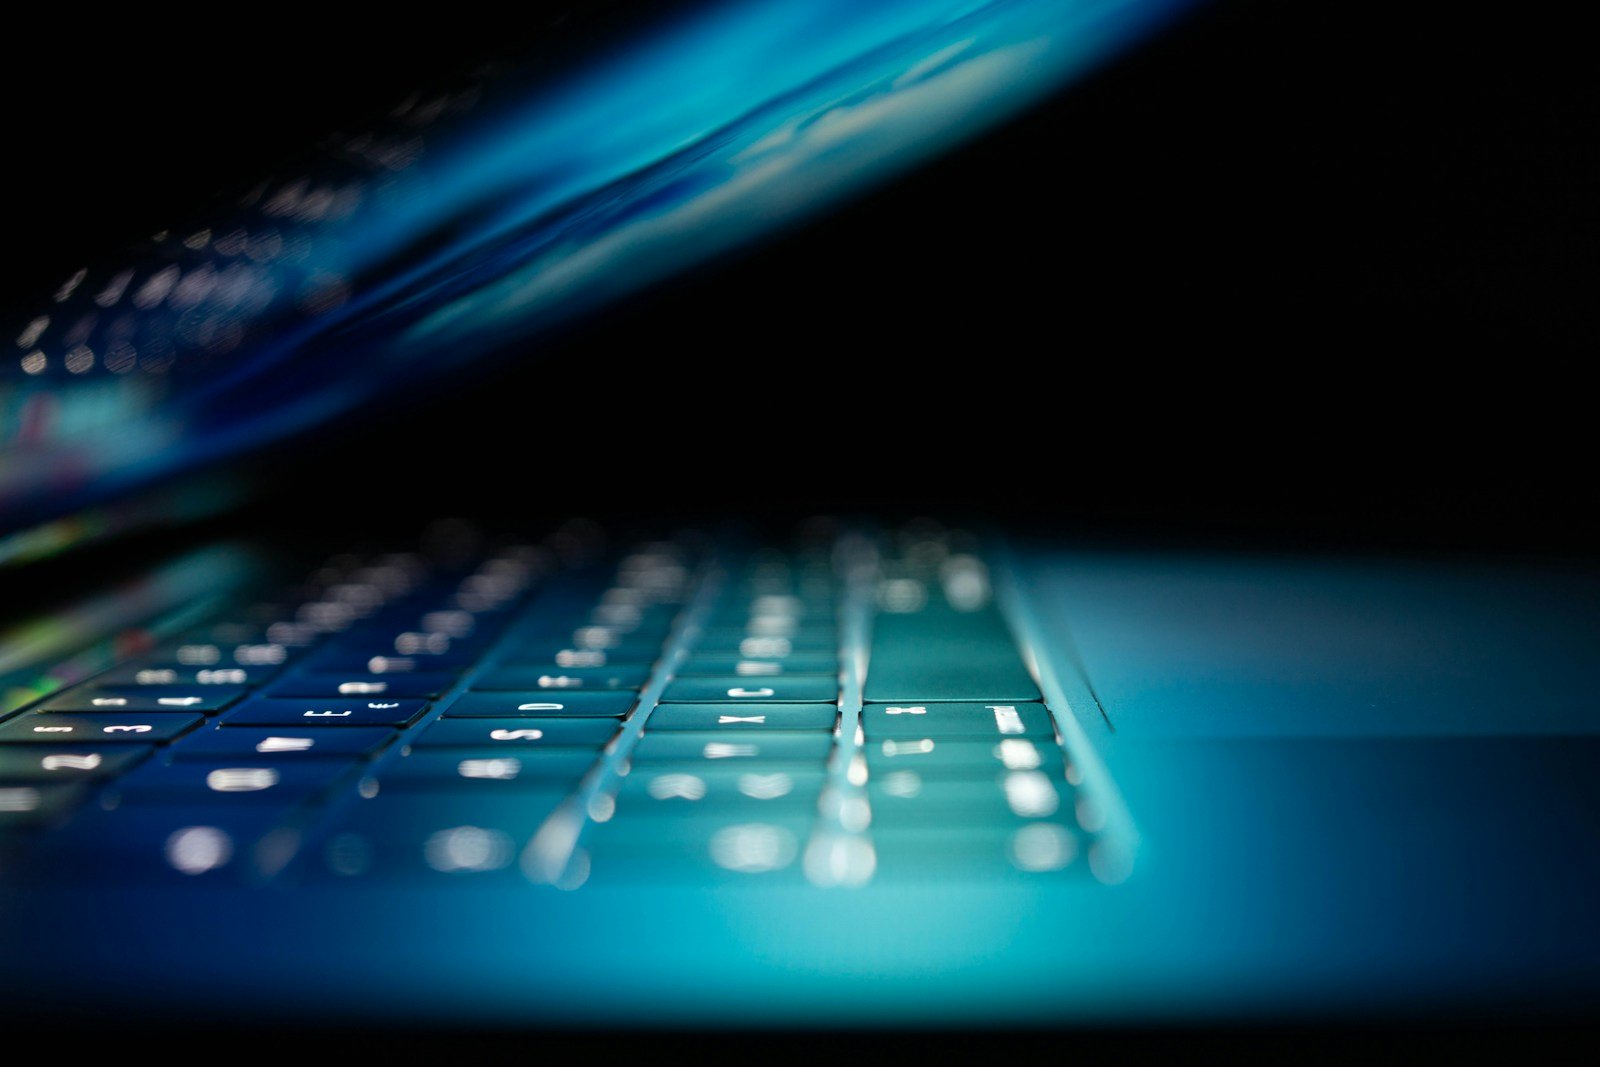 foto aproximada de um laptop azul e branco ligado